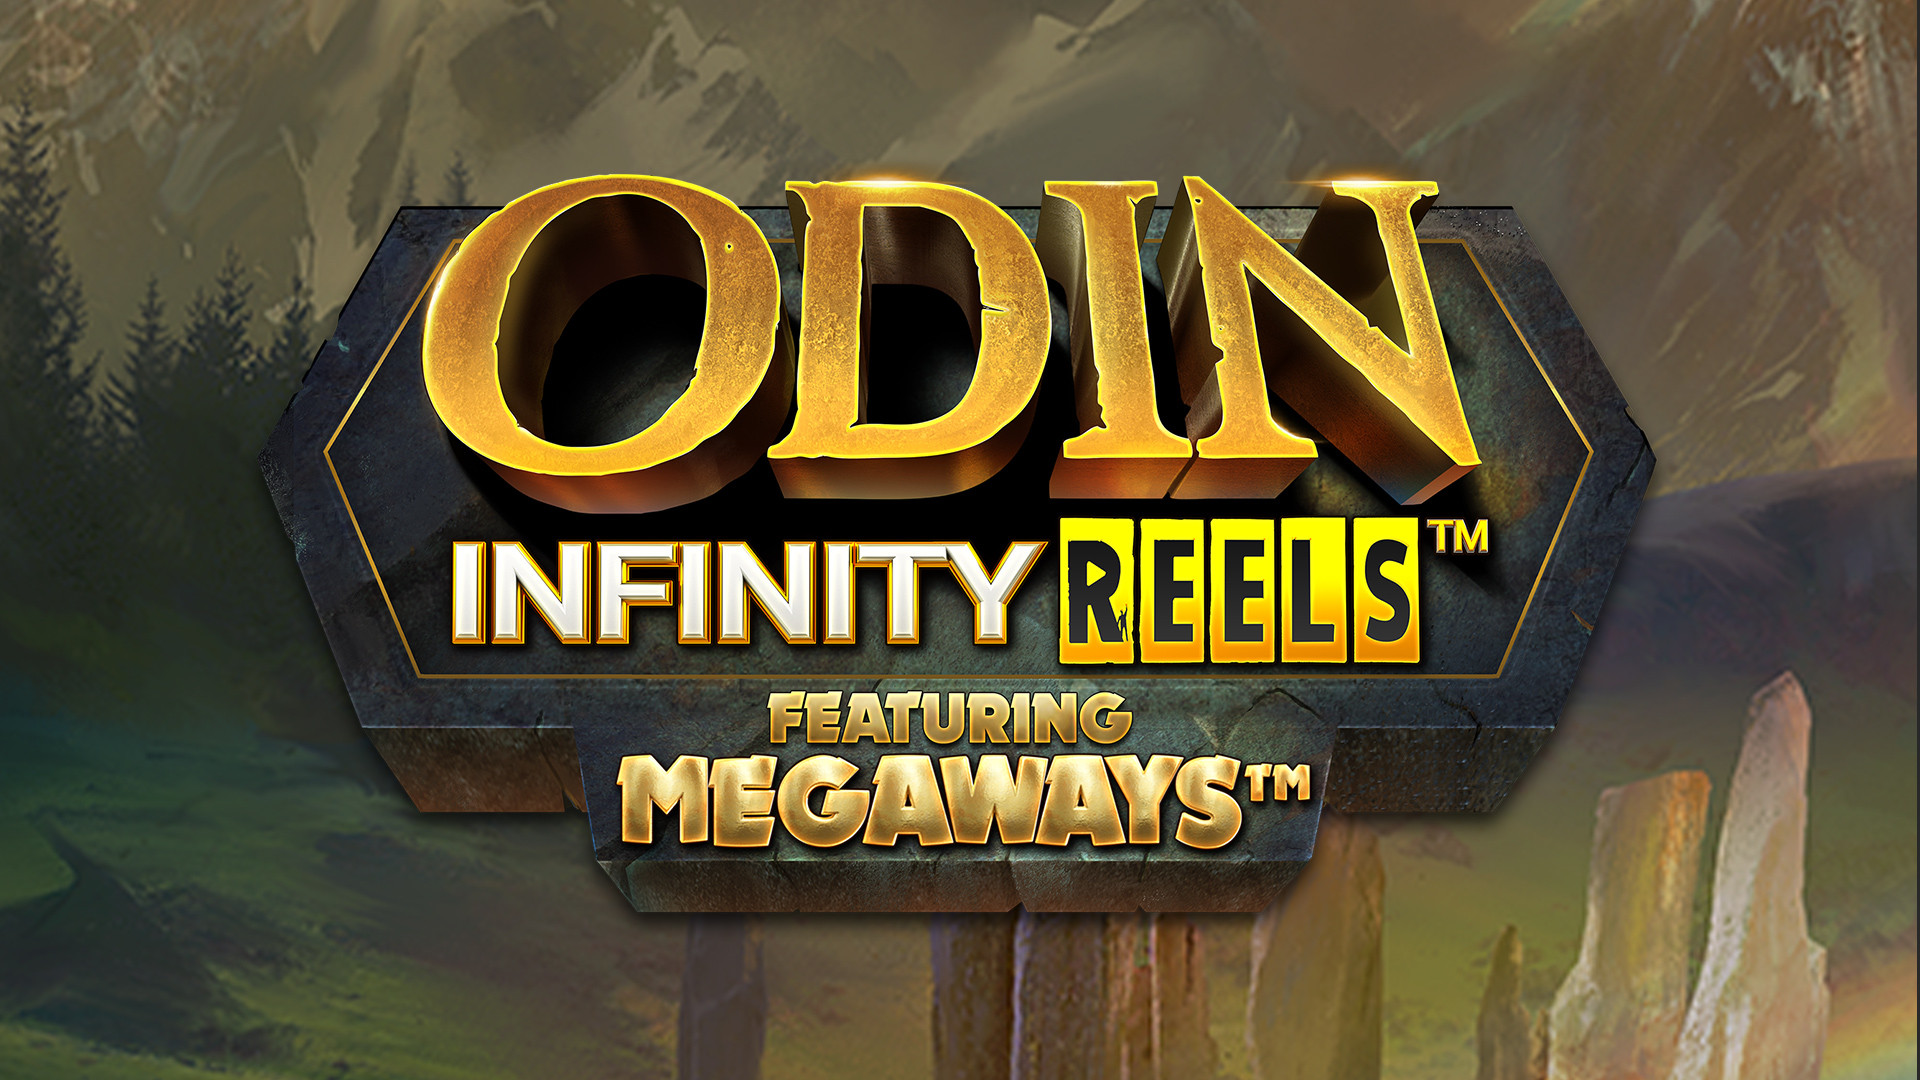 Odin Infinity Reels MEGAWAYS